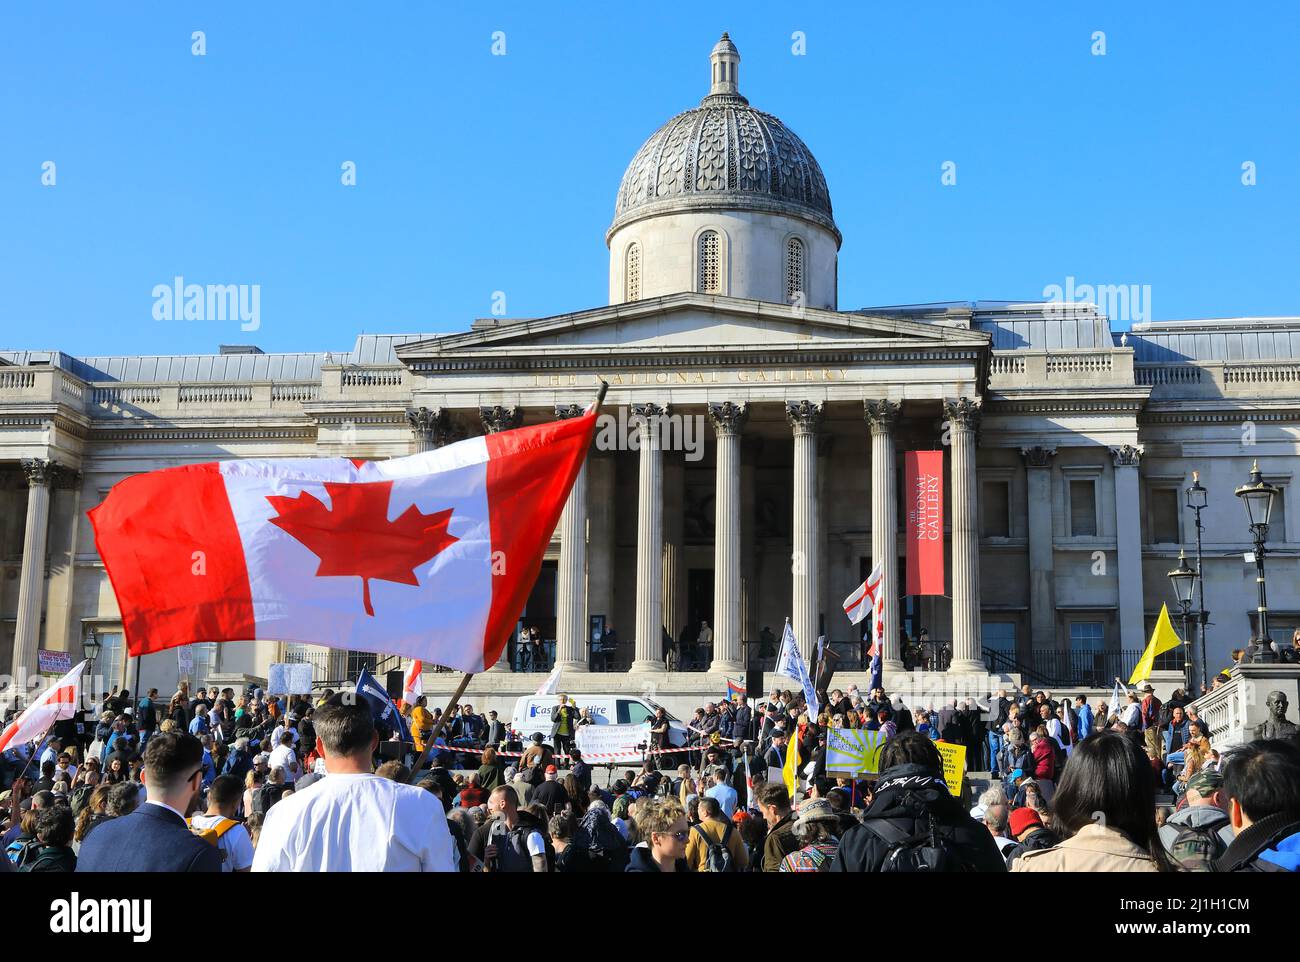 Manifestación por la libertad protestando contra diversos temas de la derecha, como las vacunas contra Covid y los mandatos, inspirados por la protesta de los camioneros canadienses, Reino Unido Foto de stock